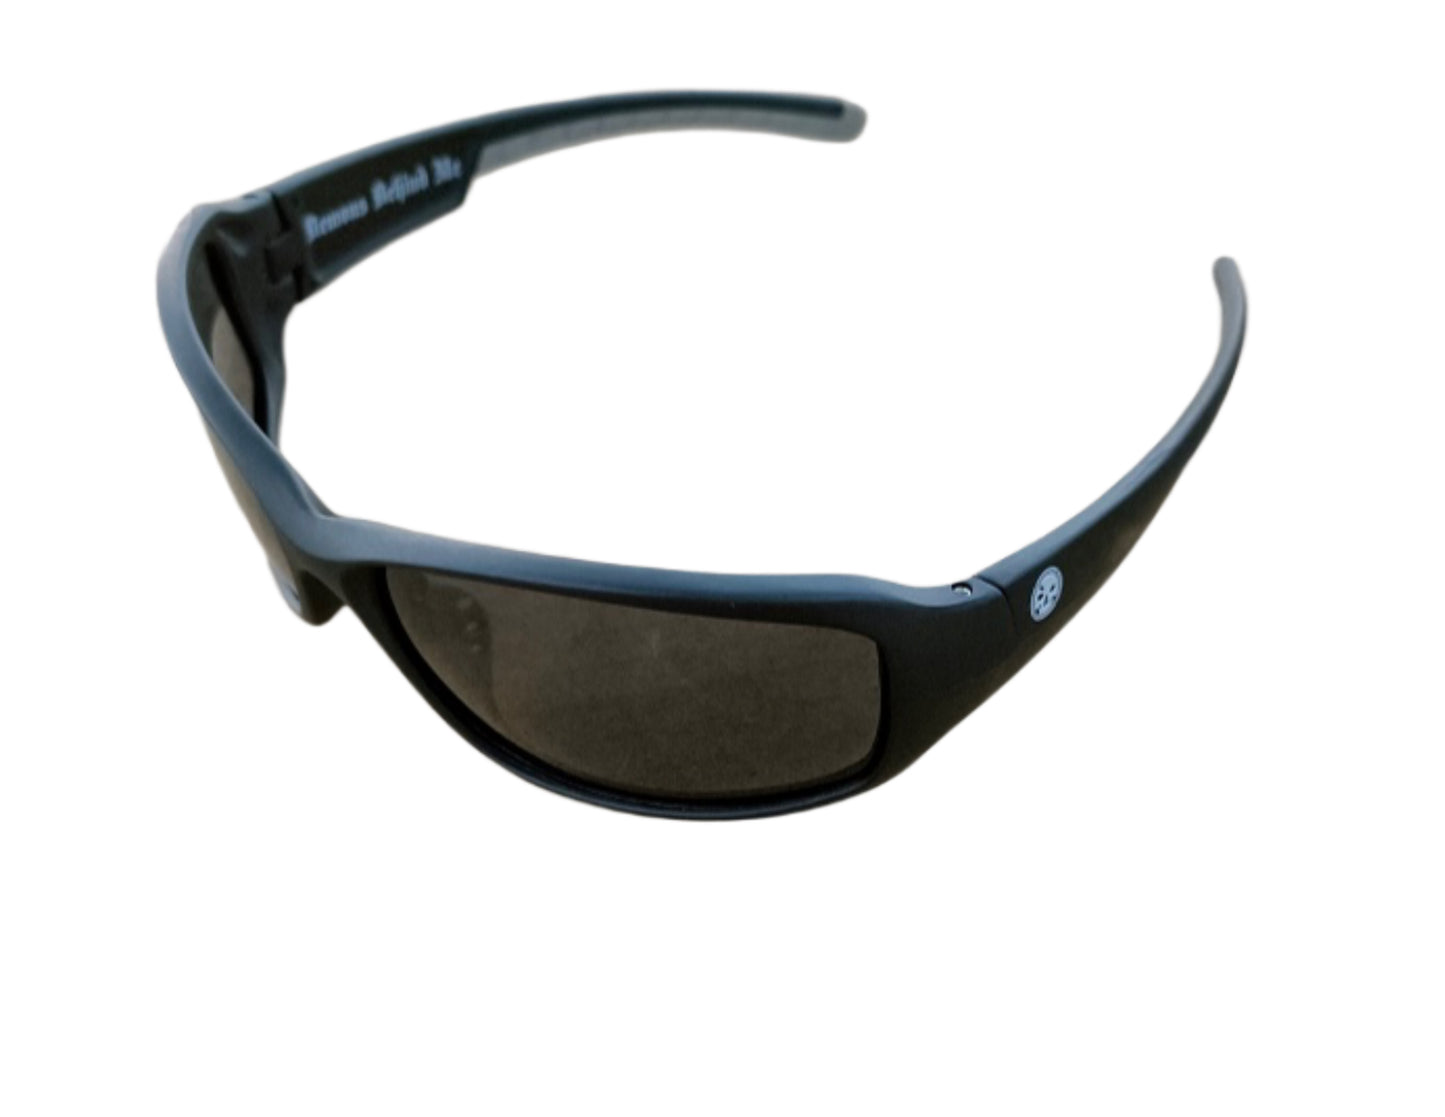 NEW! "The Cruiser" Matte Black Branded Polarized Sunglasses